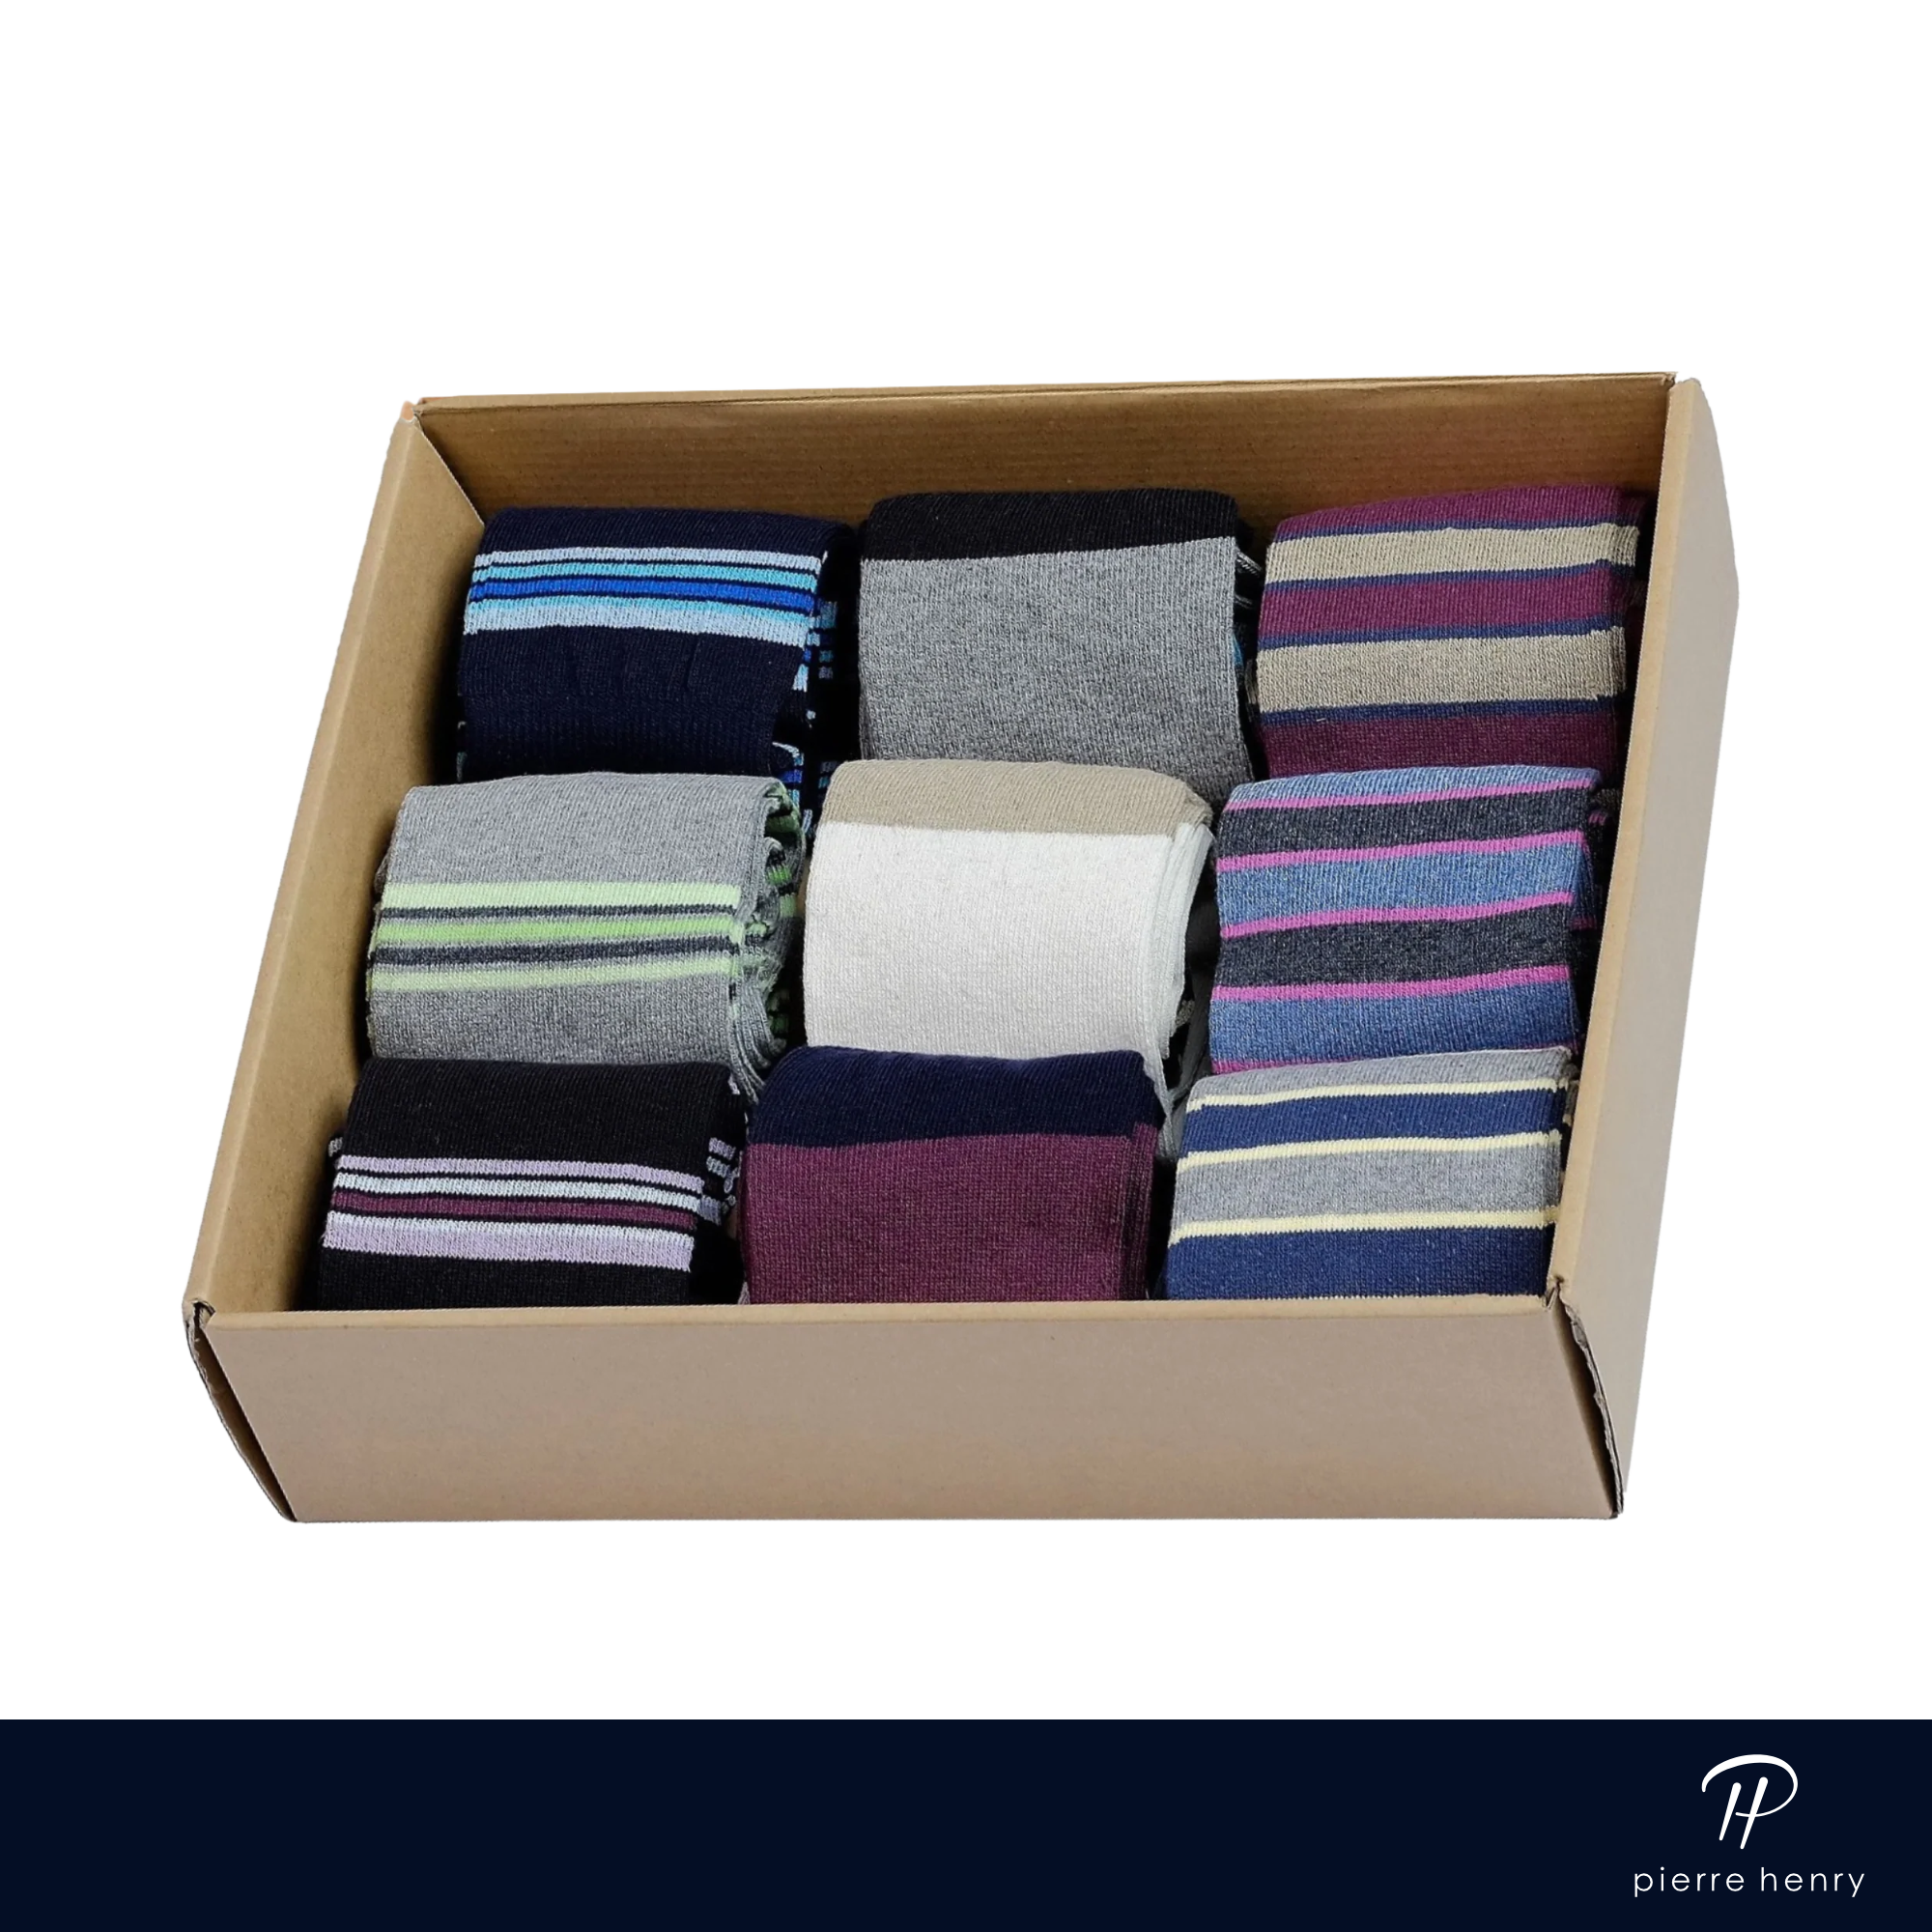 box of over the calf dress socks for men, navy dress socks, burgundy dress socks, grey dress socks, striped dress socks